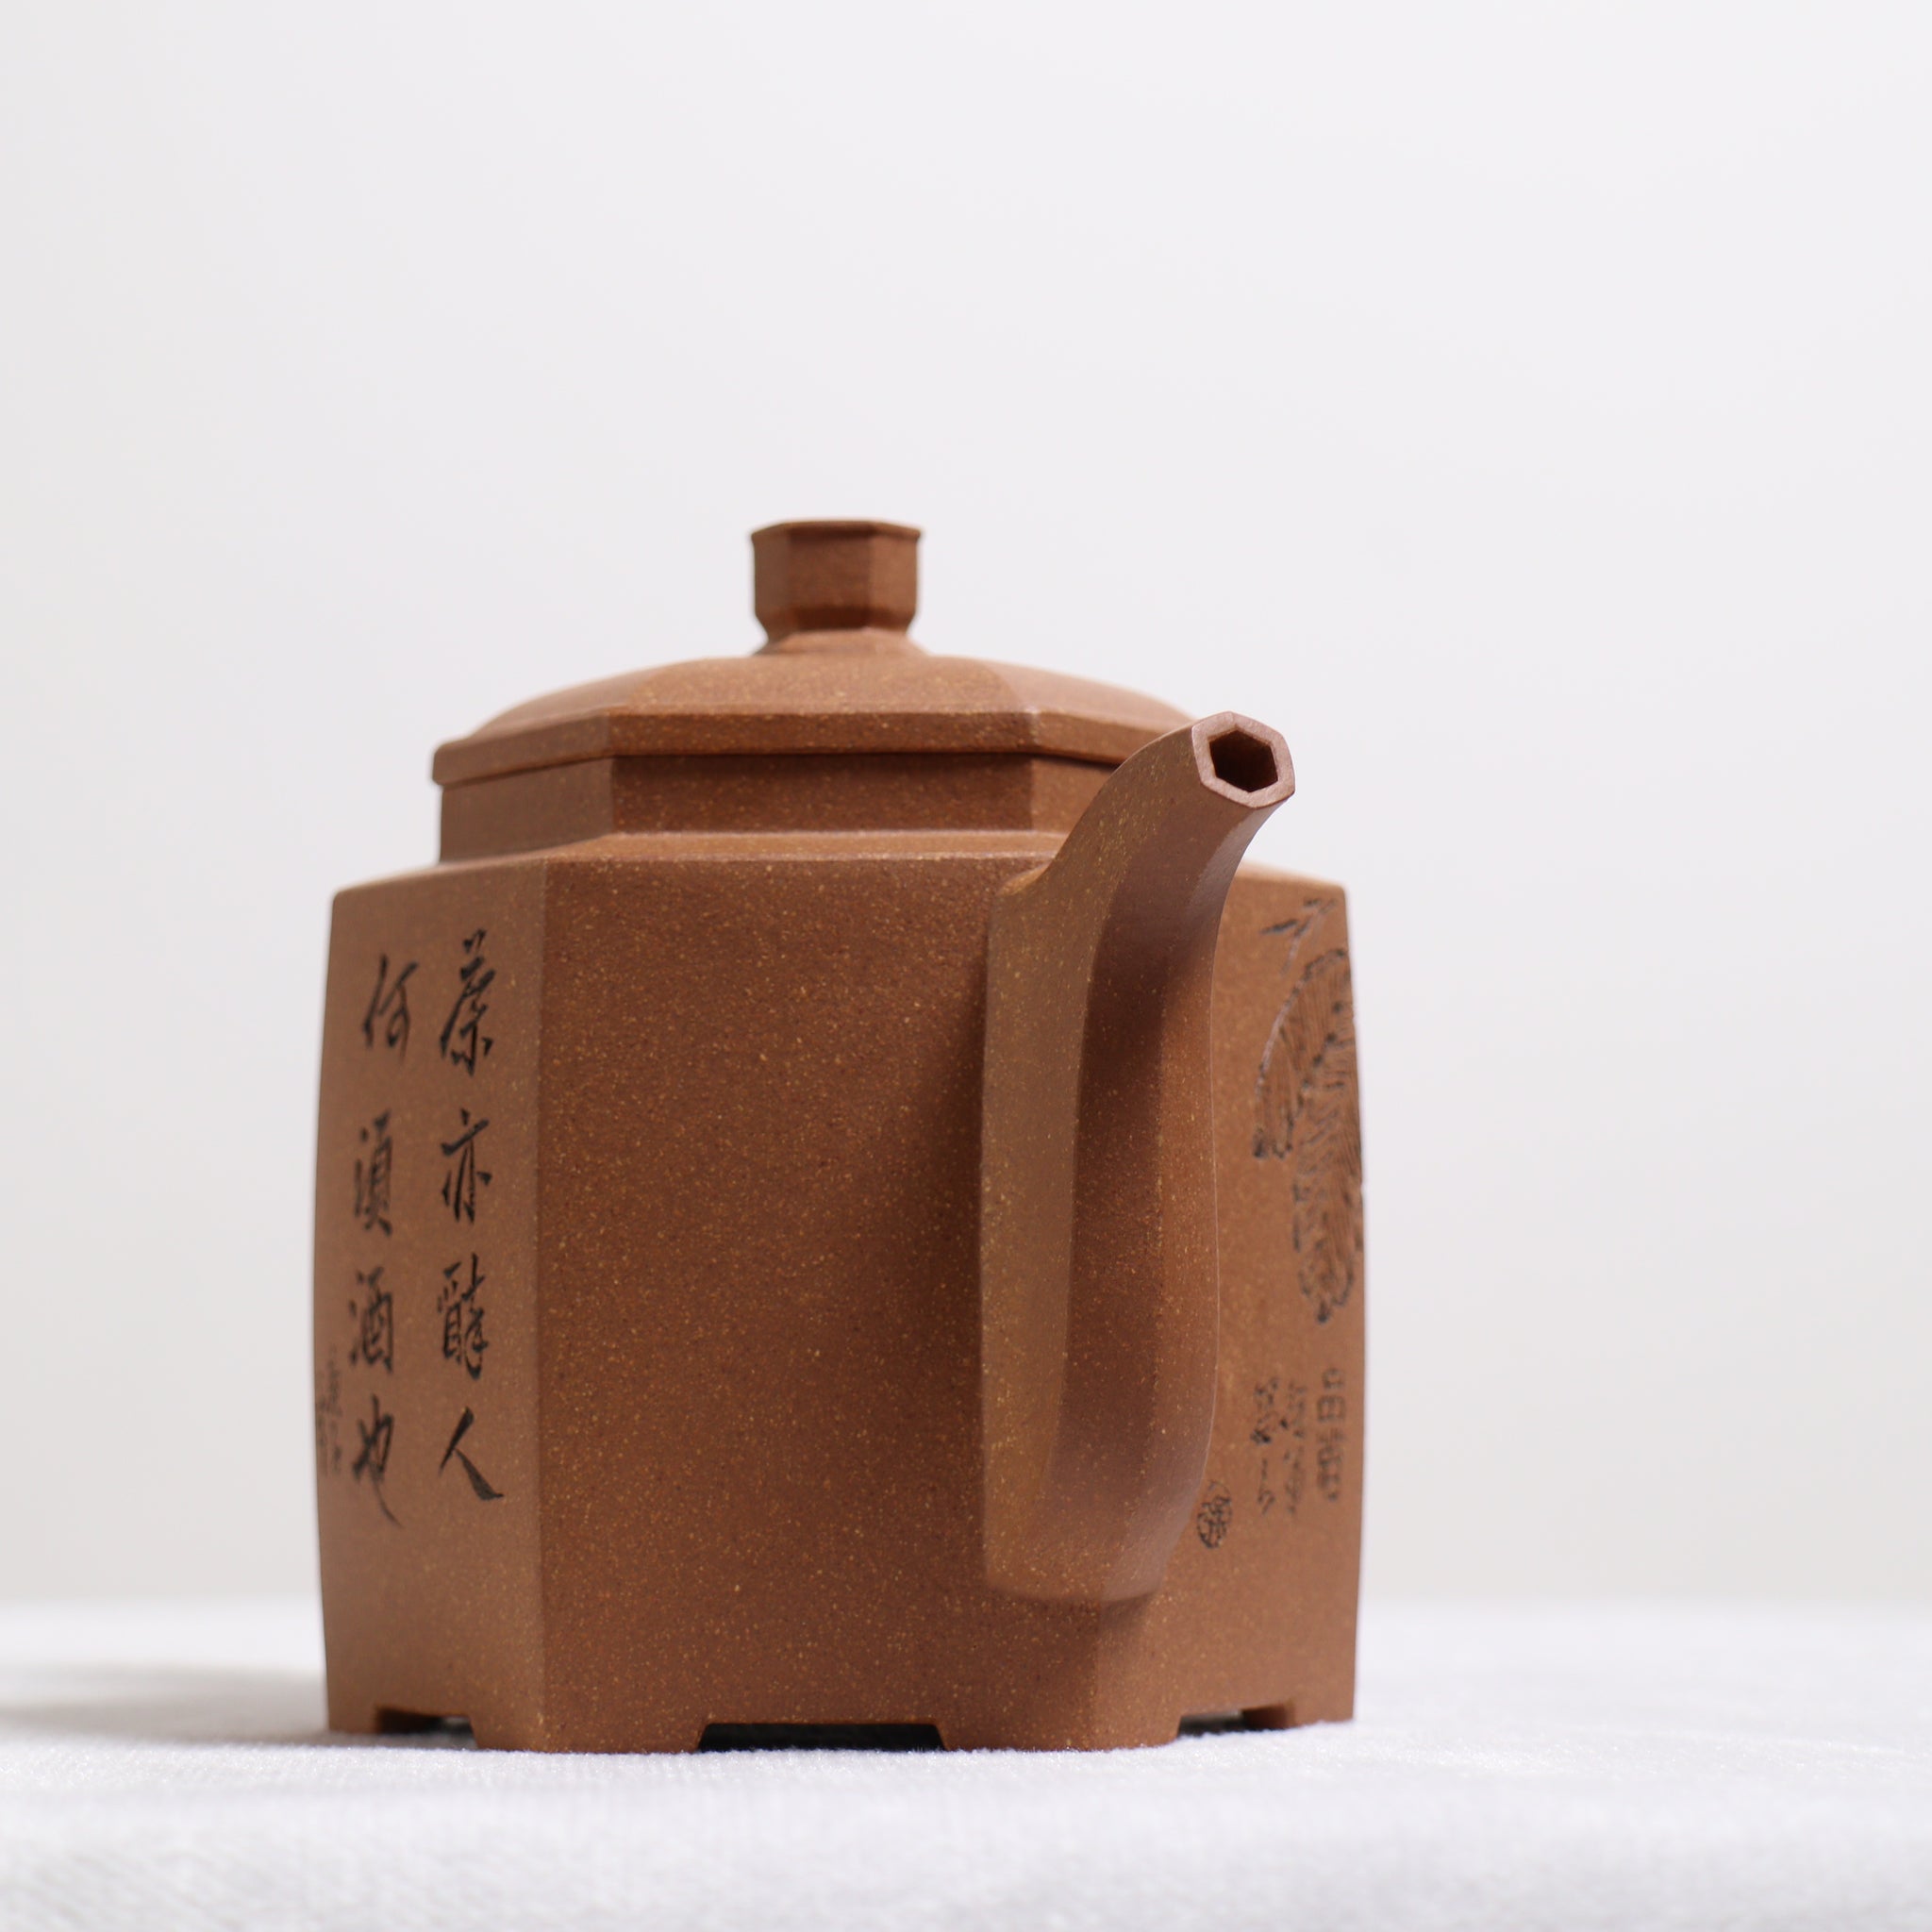 【六方天柱】蟹黃段泥刻畫紫砂茶壺